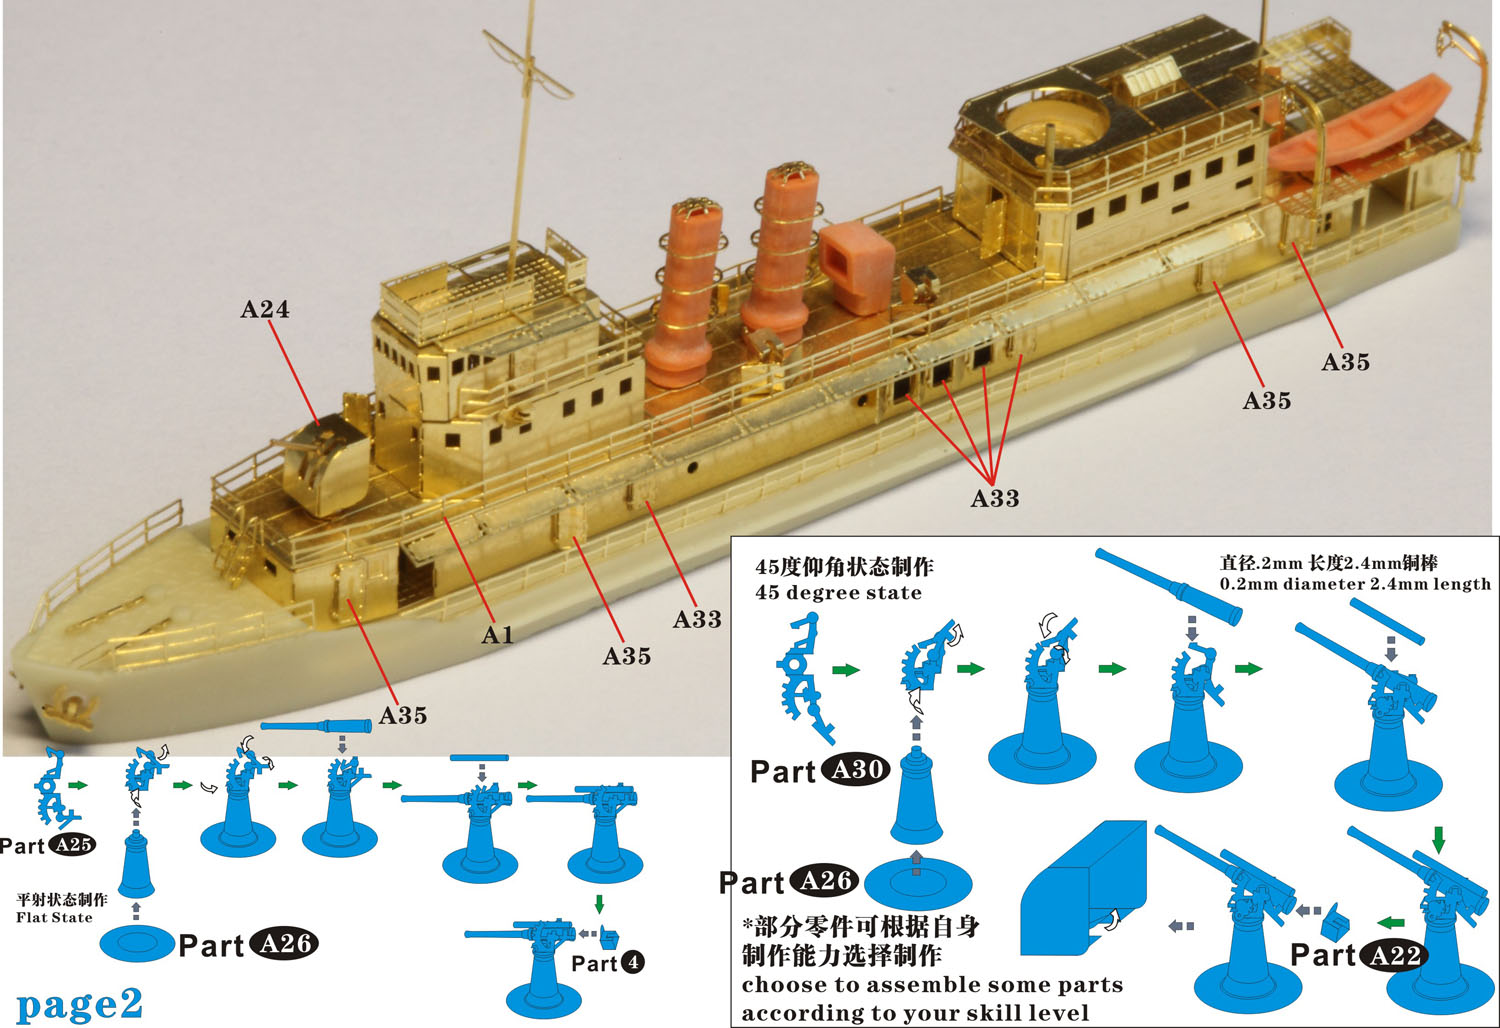 1/700 二战日本海军热海级炮艇树脂模型套件